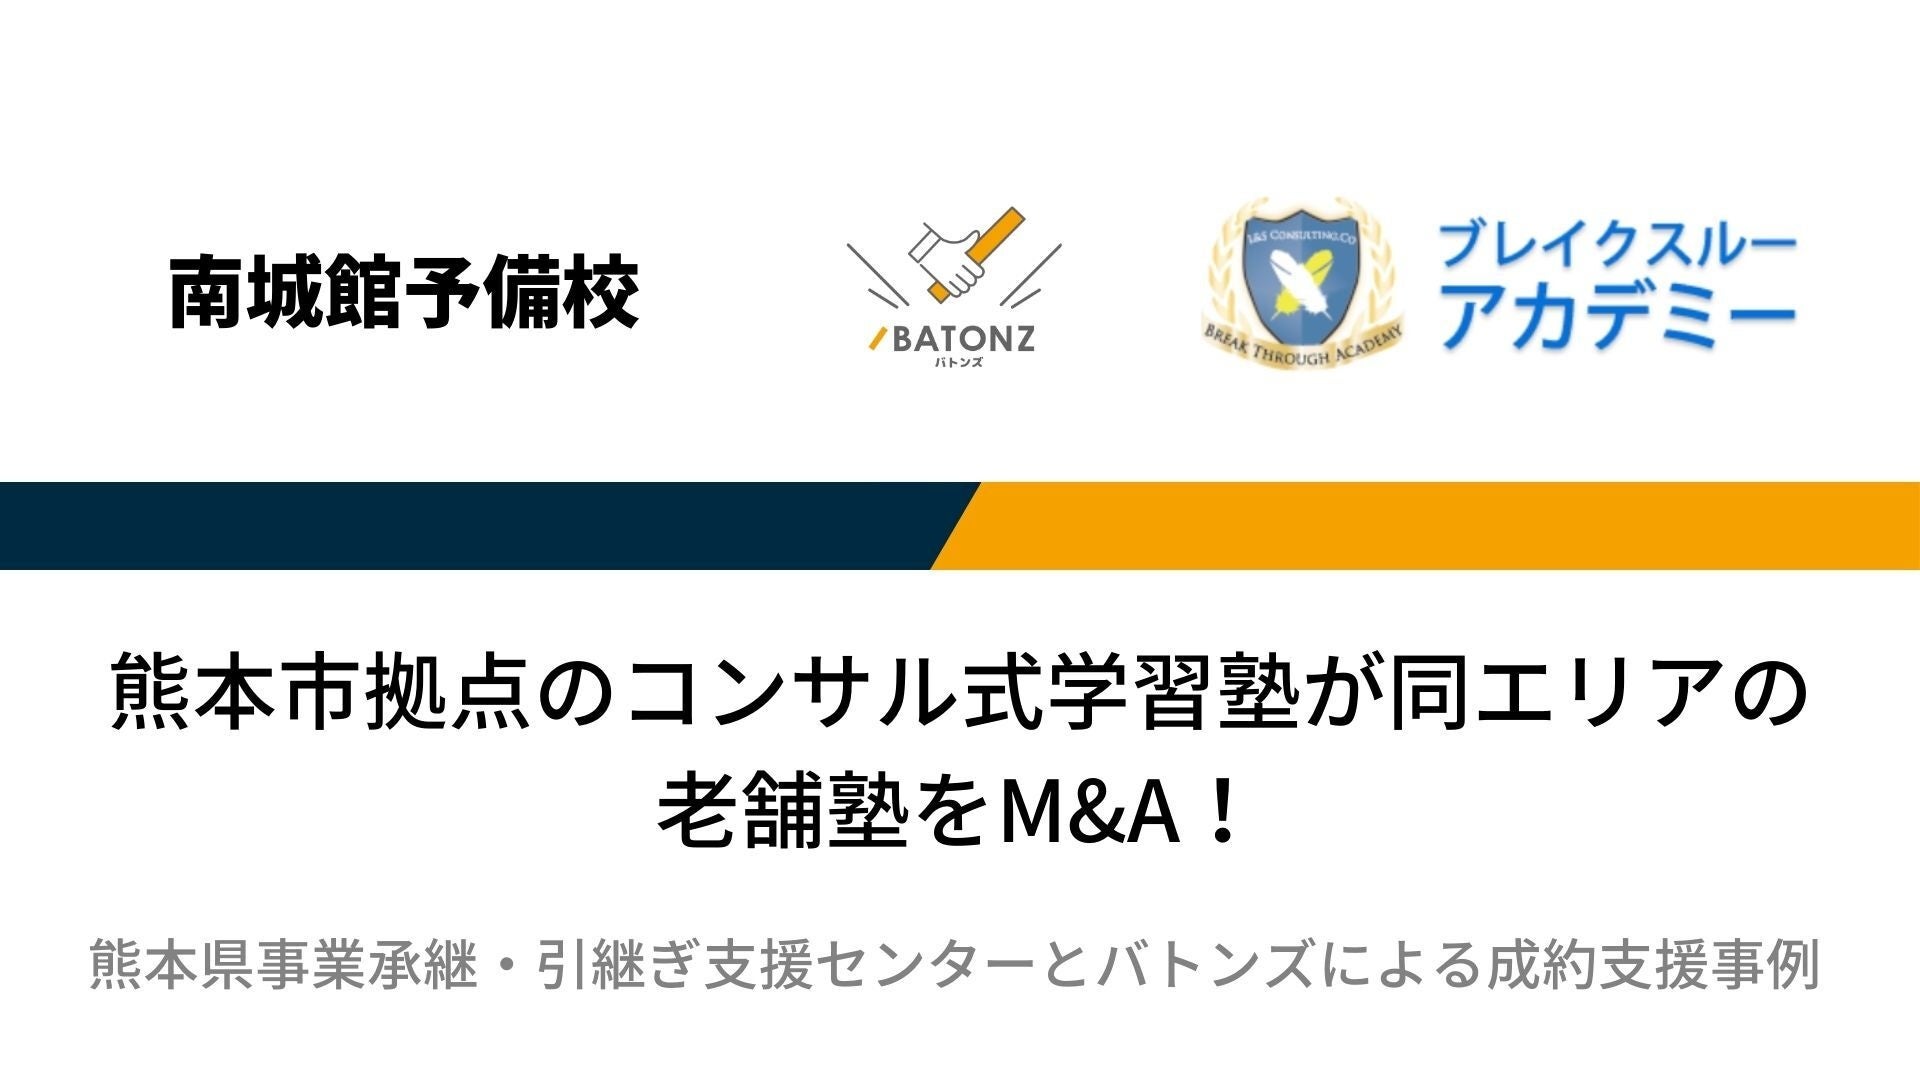 【バトンズ成約事例】熊本市拠点のコンサル式学習塾が同エリアの老舗塾をM&A！